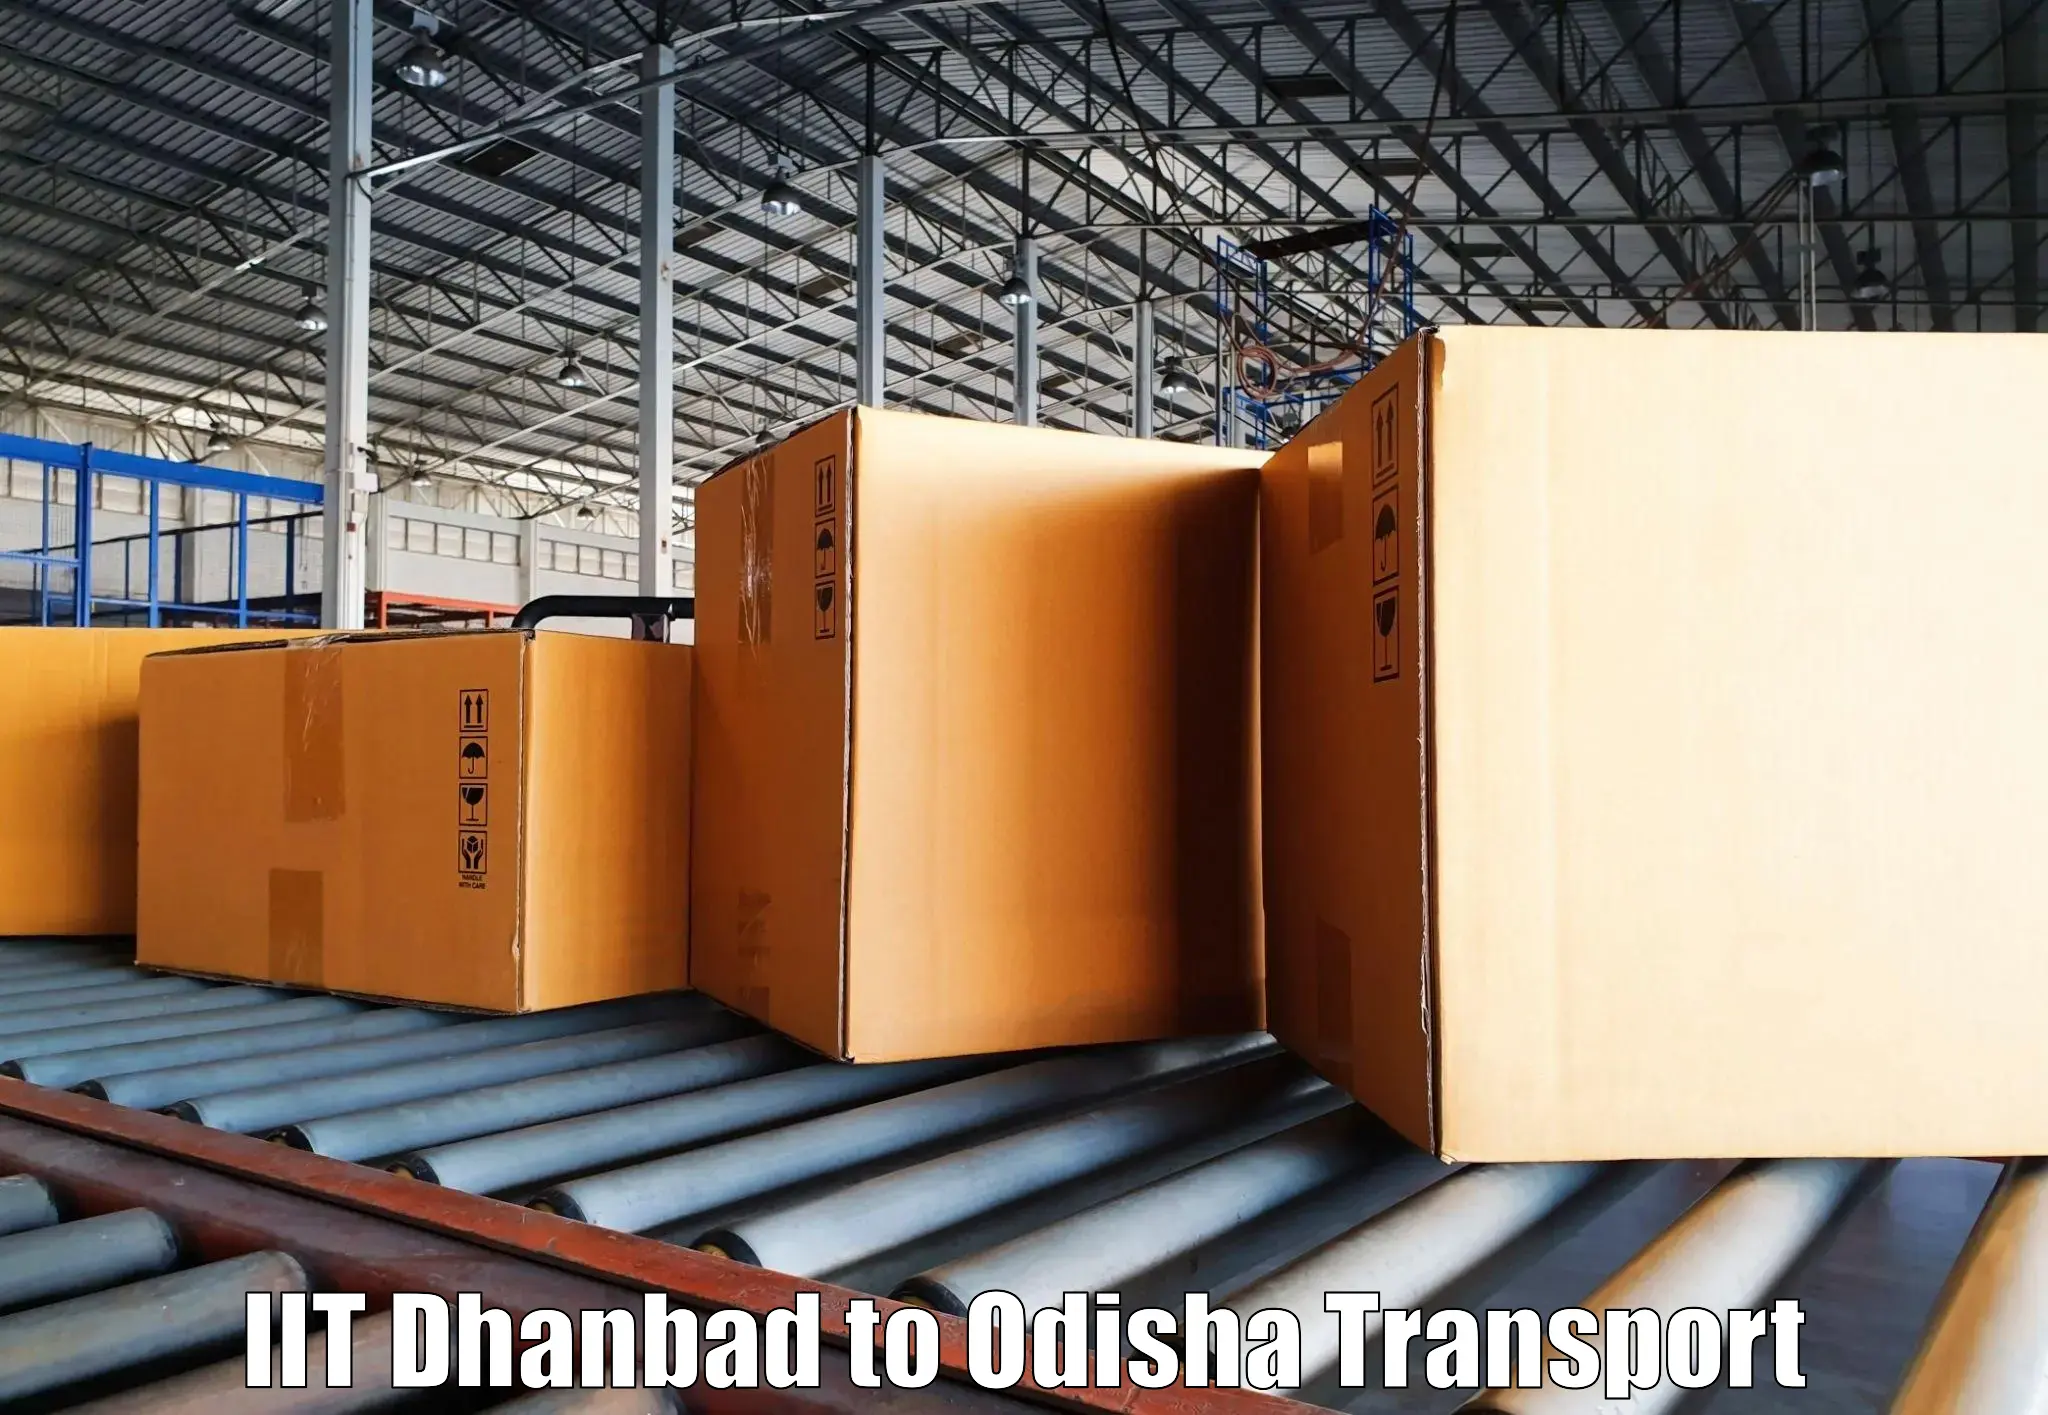 Land transport services IIT Dhanbad to Kalahandi